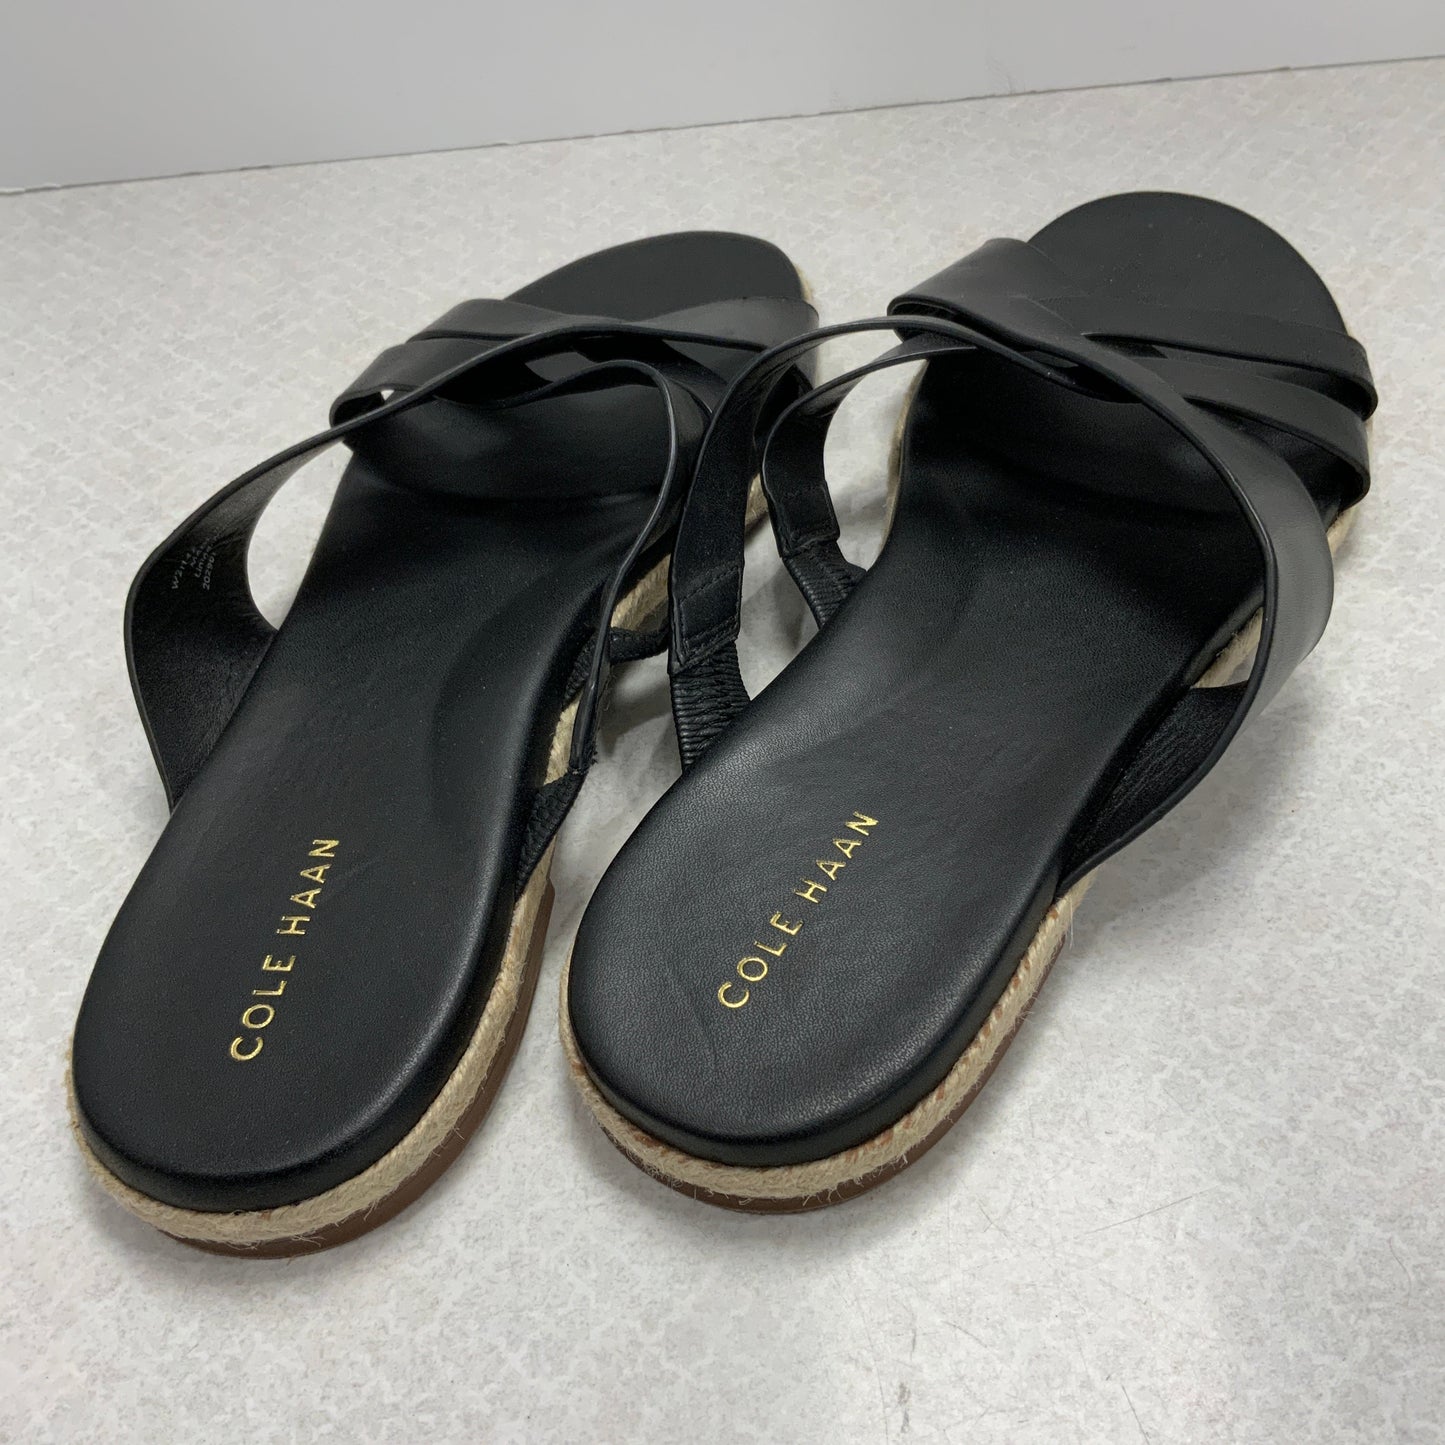 Black Sandals Flats Cole-haan, Size 10